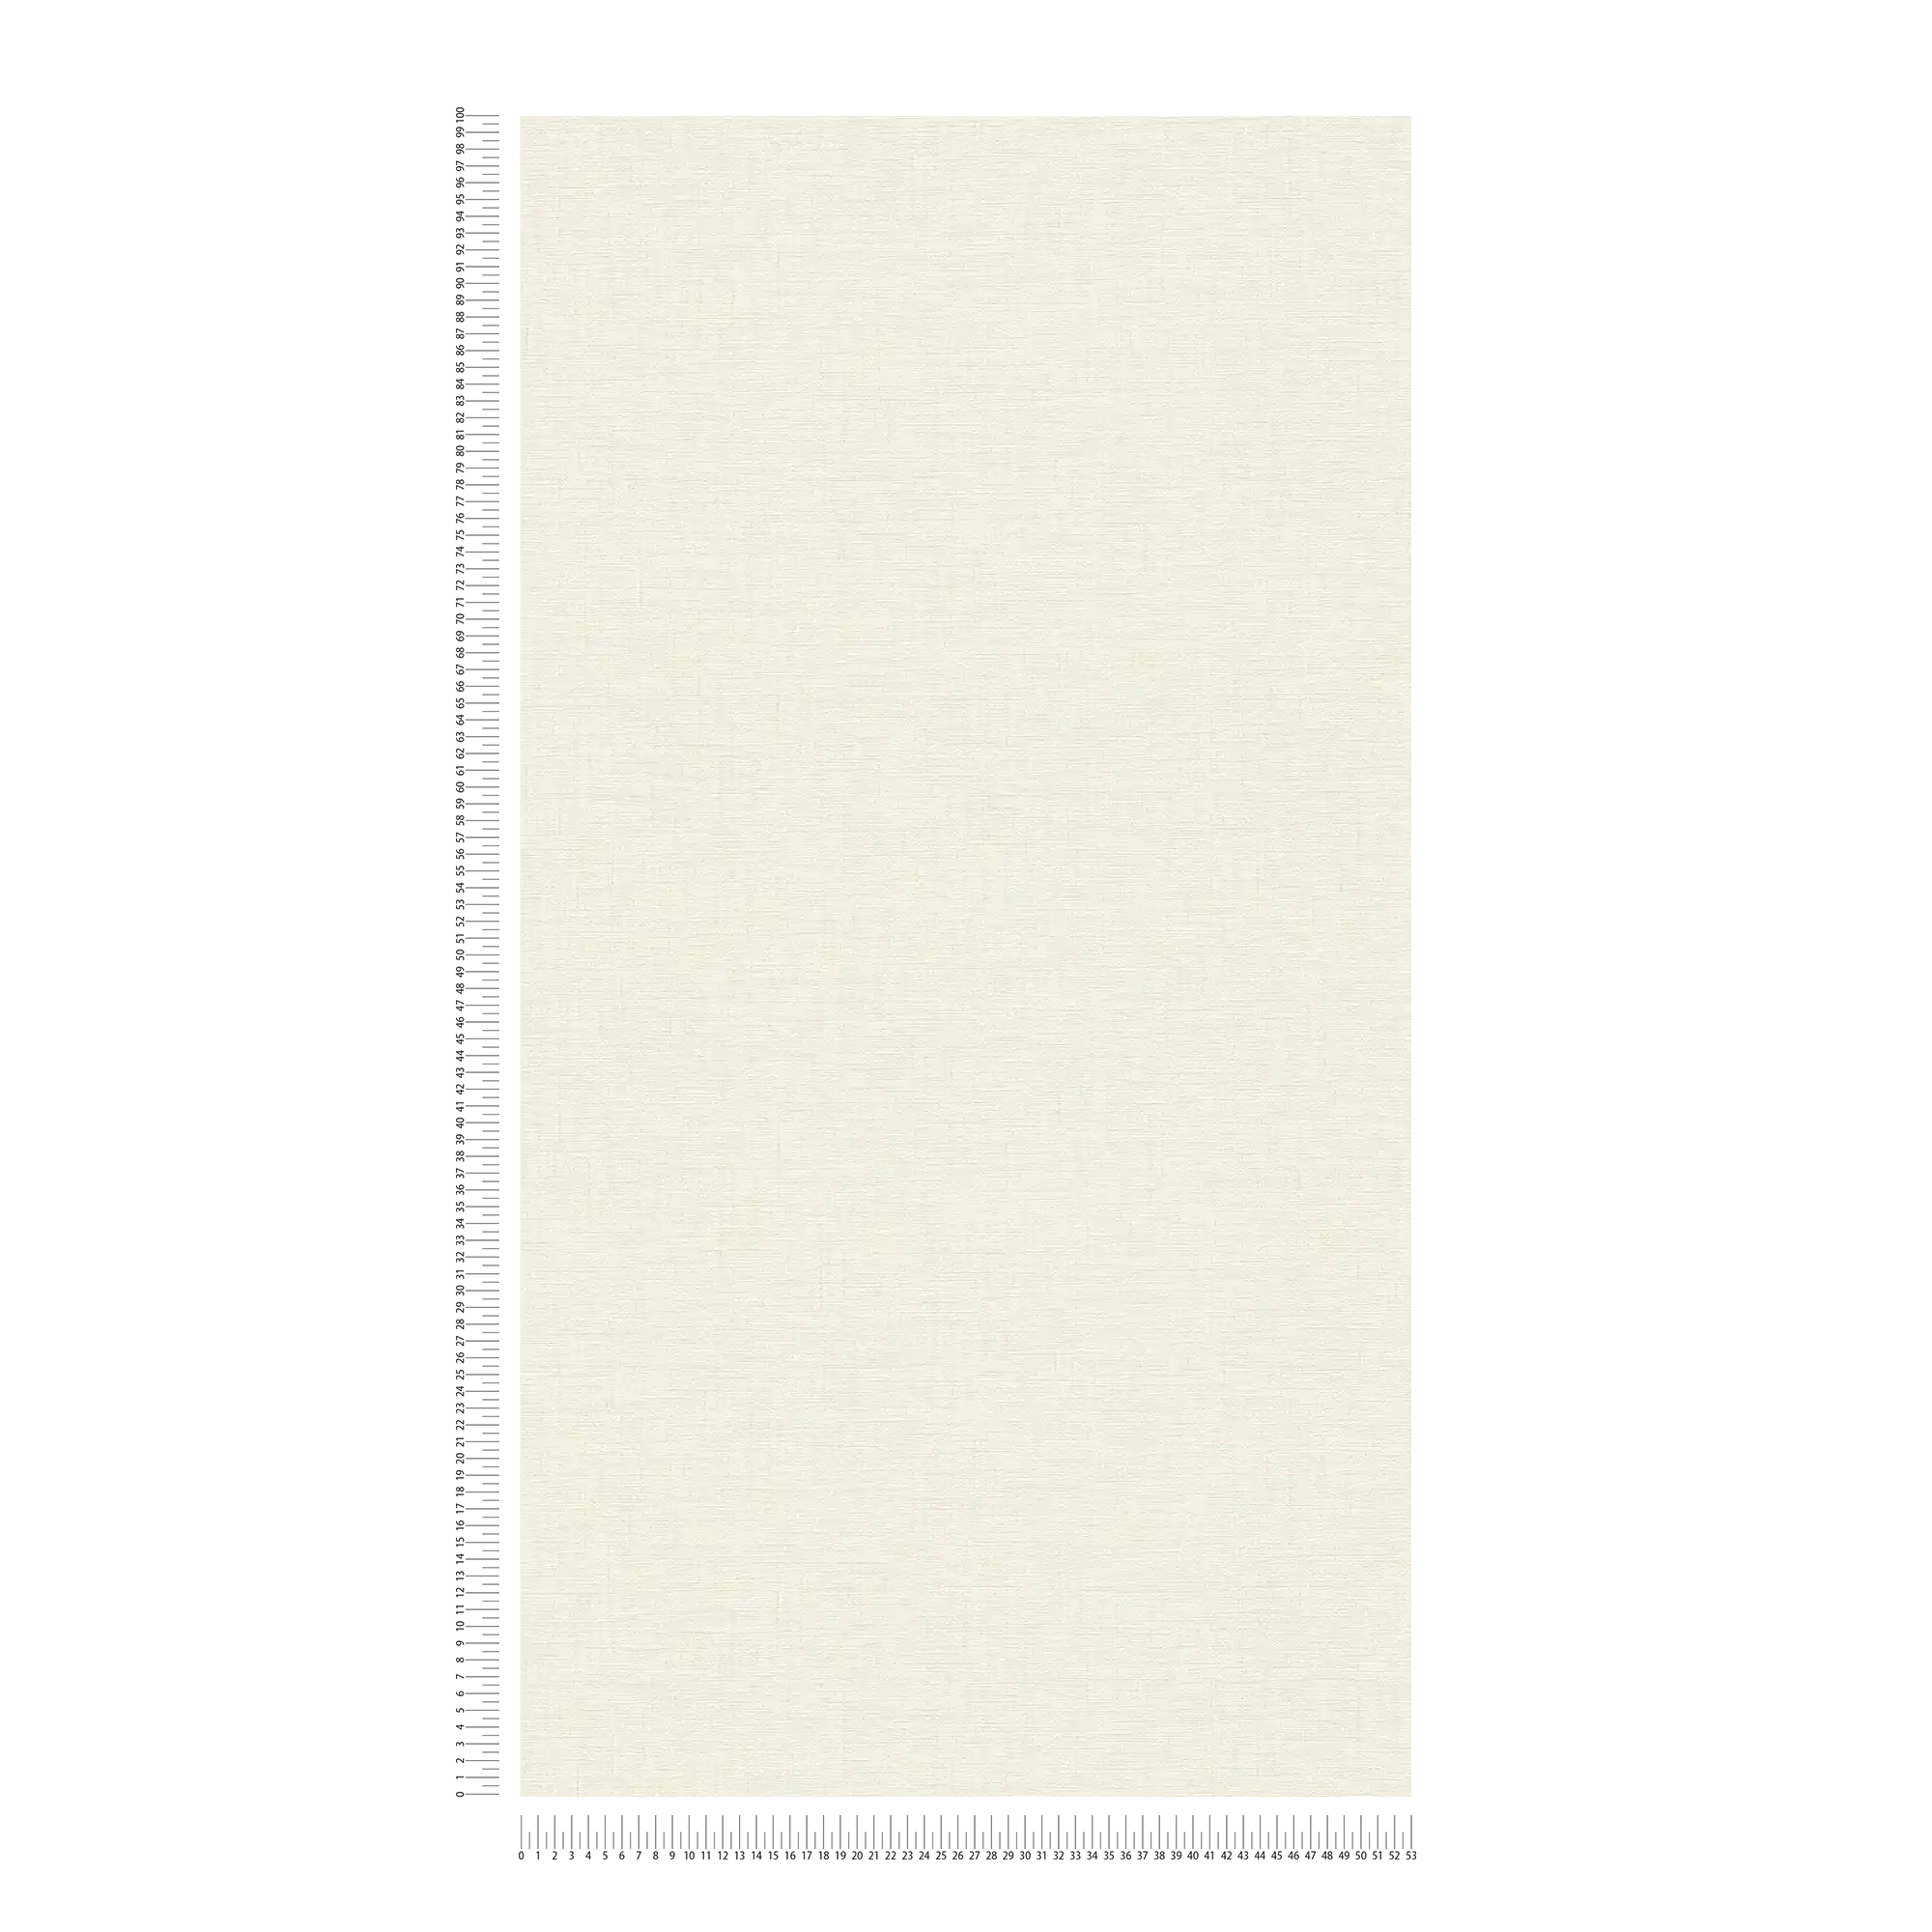             Carta da parati bianco crema con effetto tessuto e texture
        